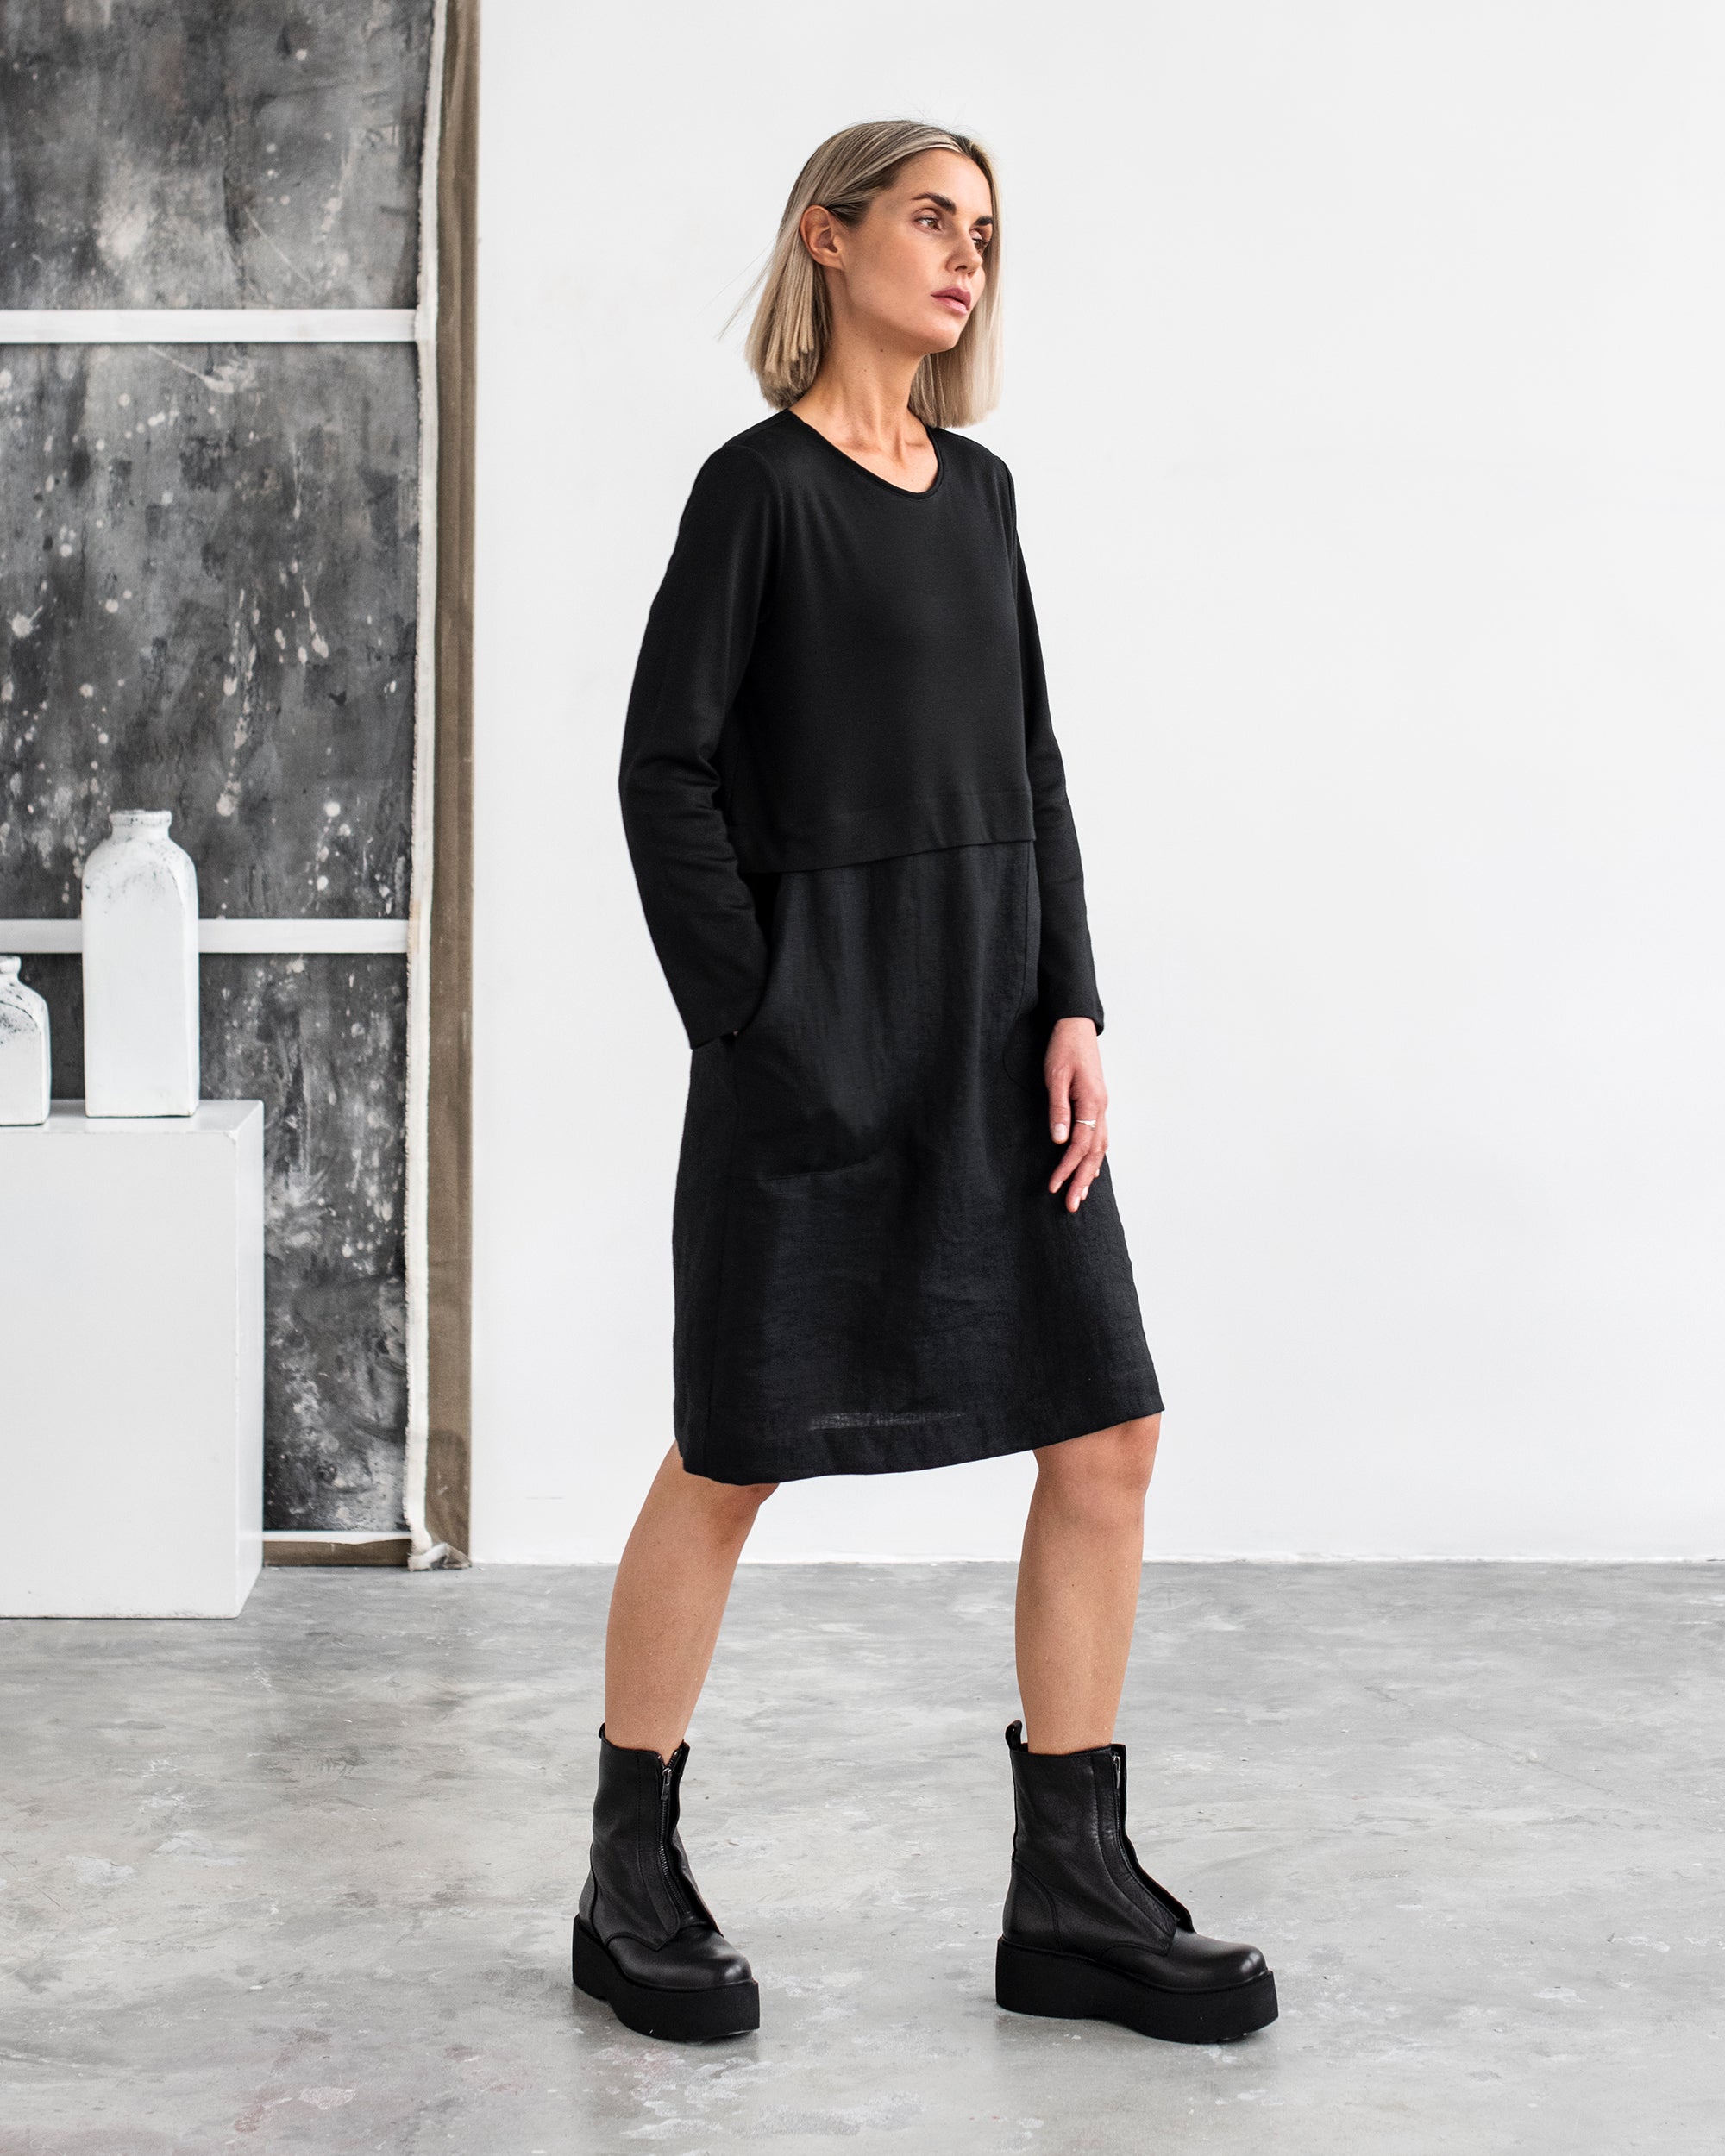 NWT! Zara Dark Brown Straight Cut Full Sequin Midi Shift Dress XS | eBay